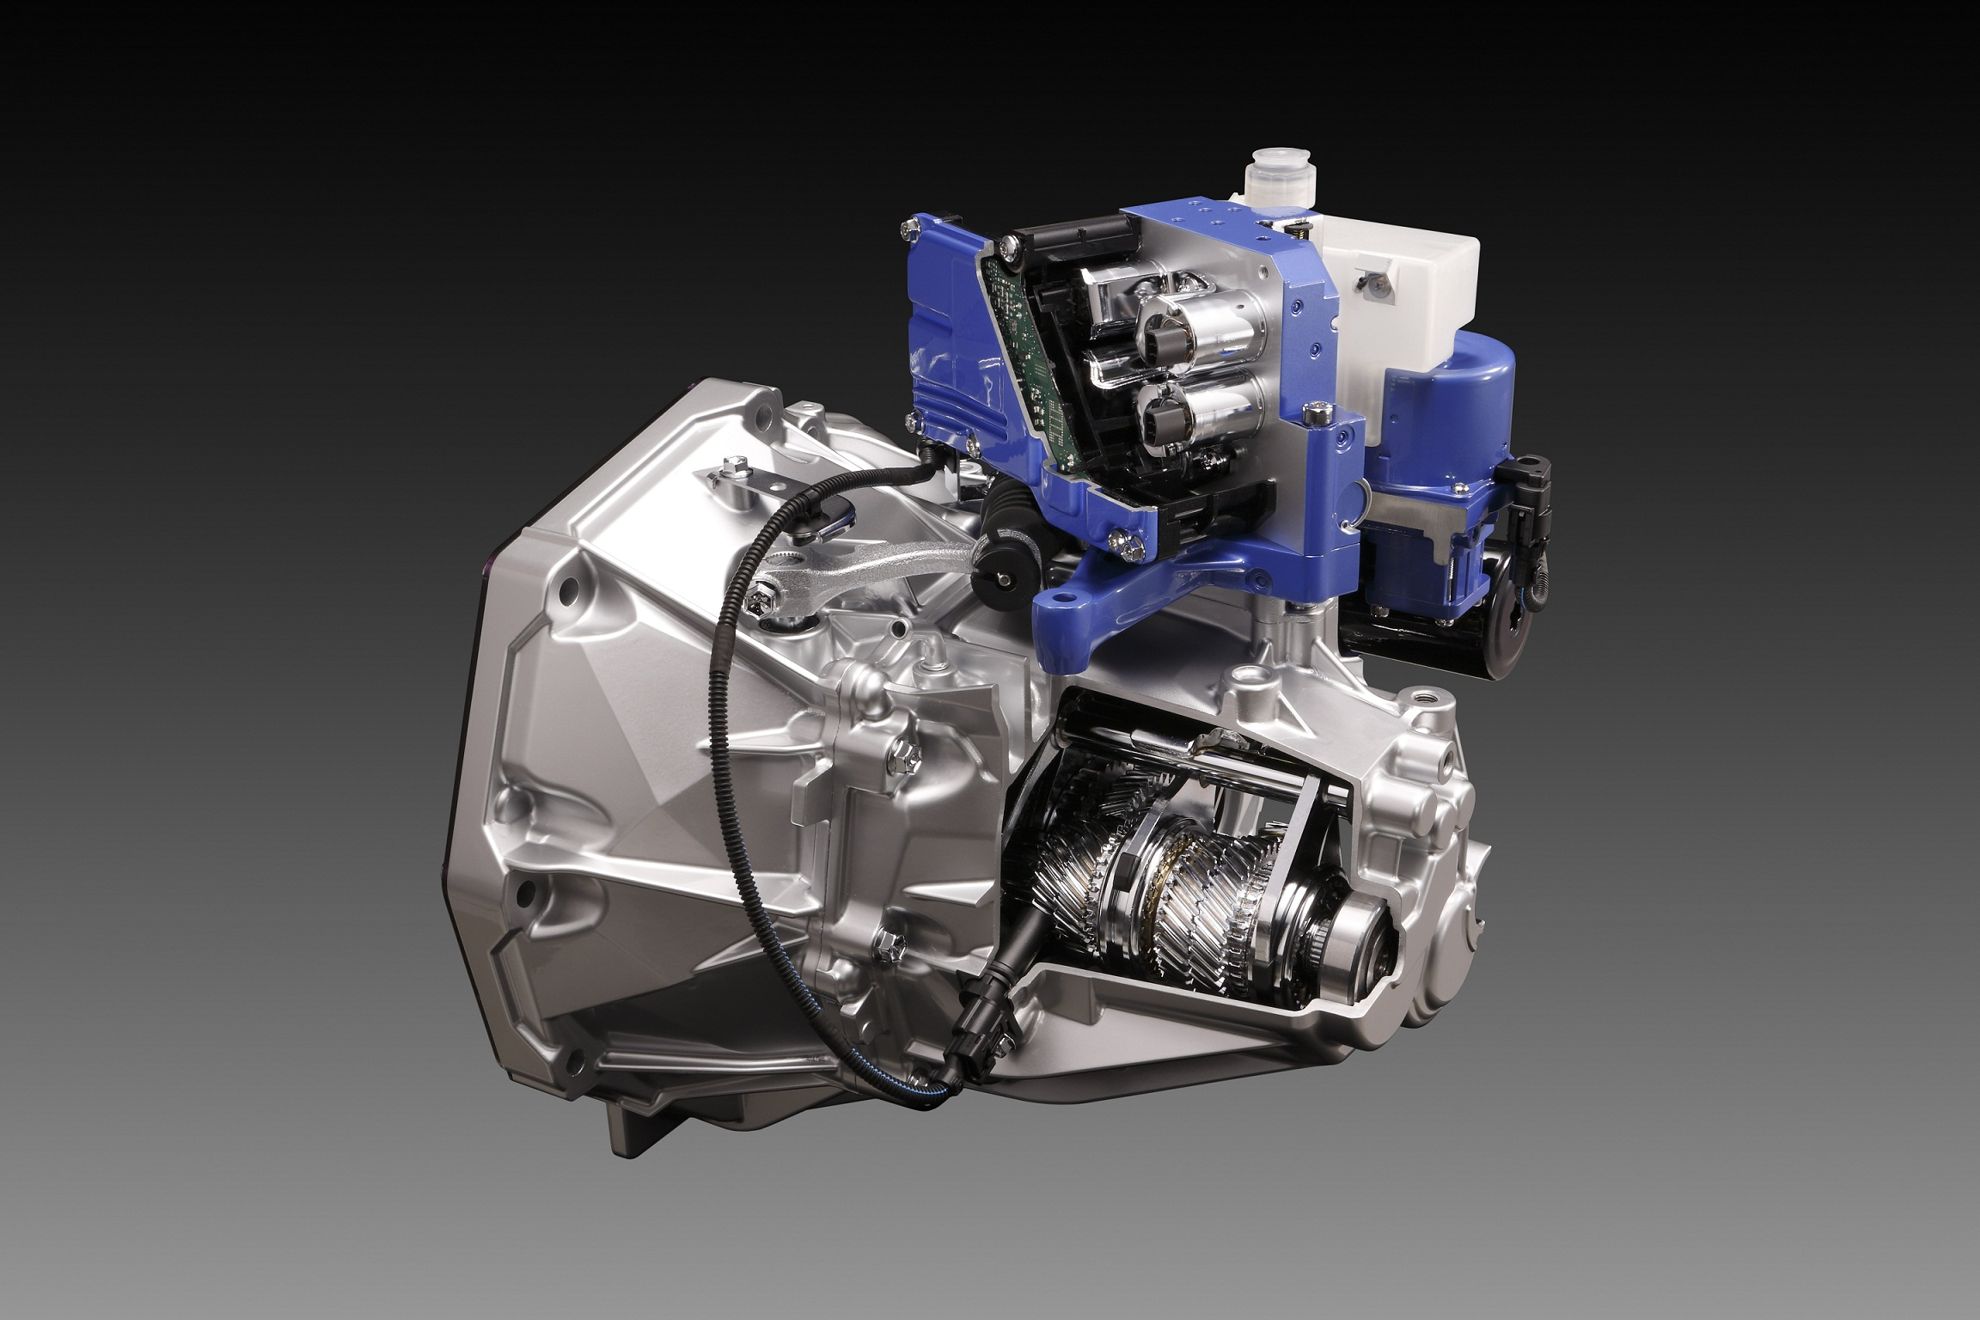 Suzuki develops advanced auto-shift gearbox